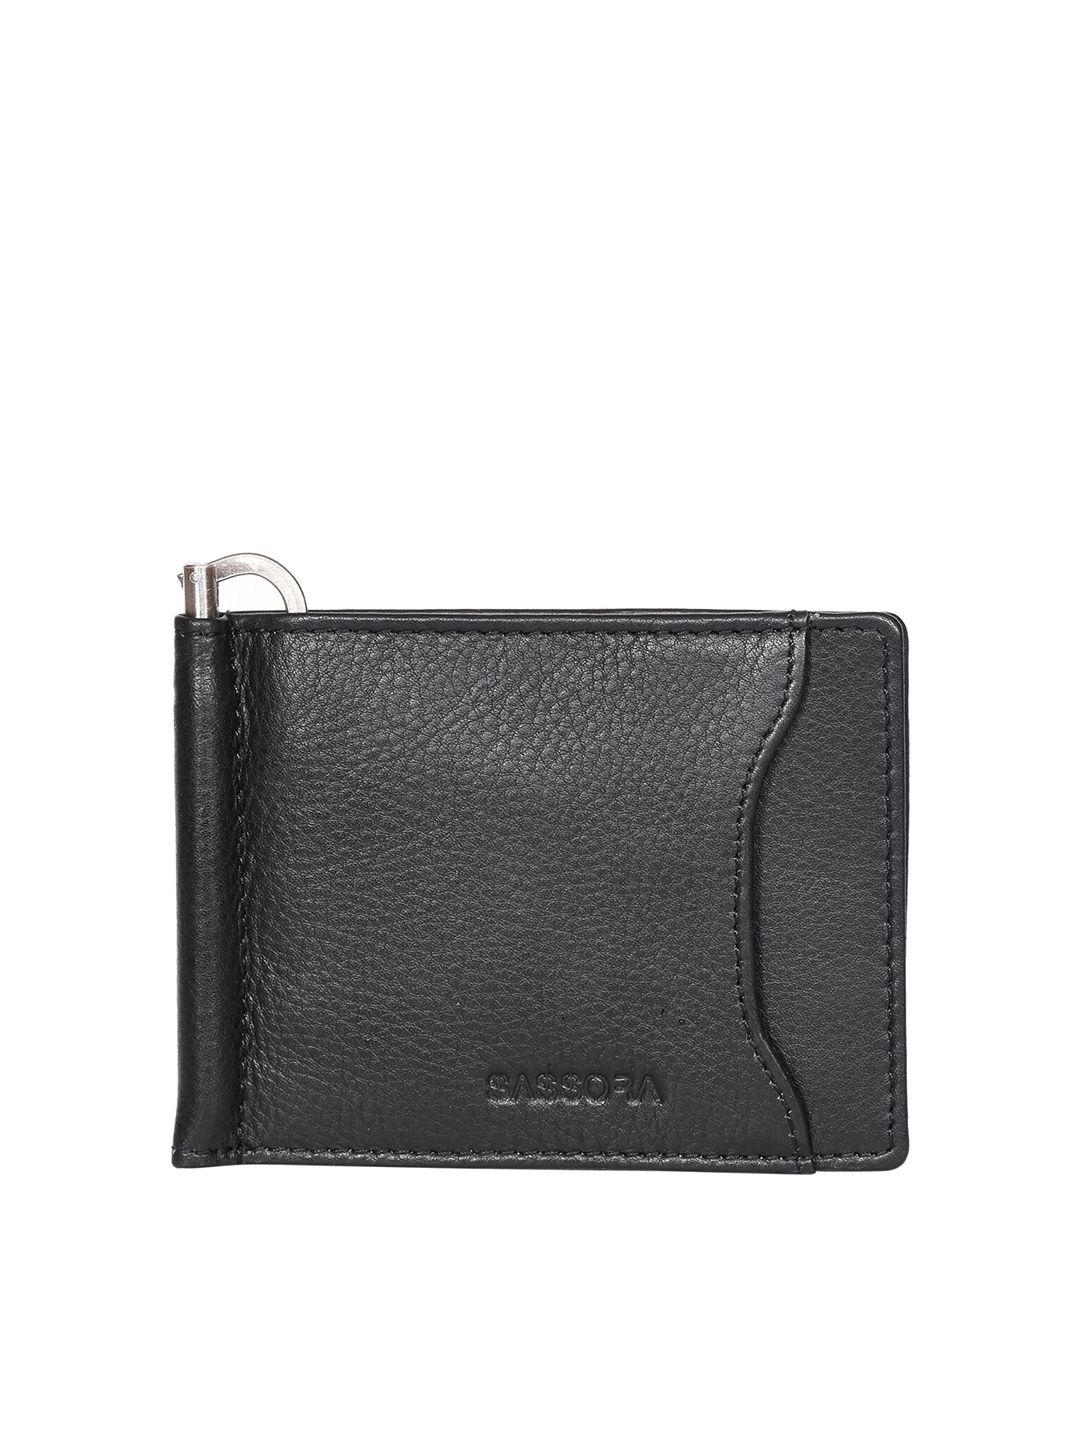 sassora men leather two fold wallet